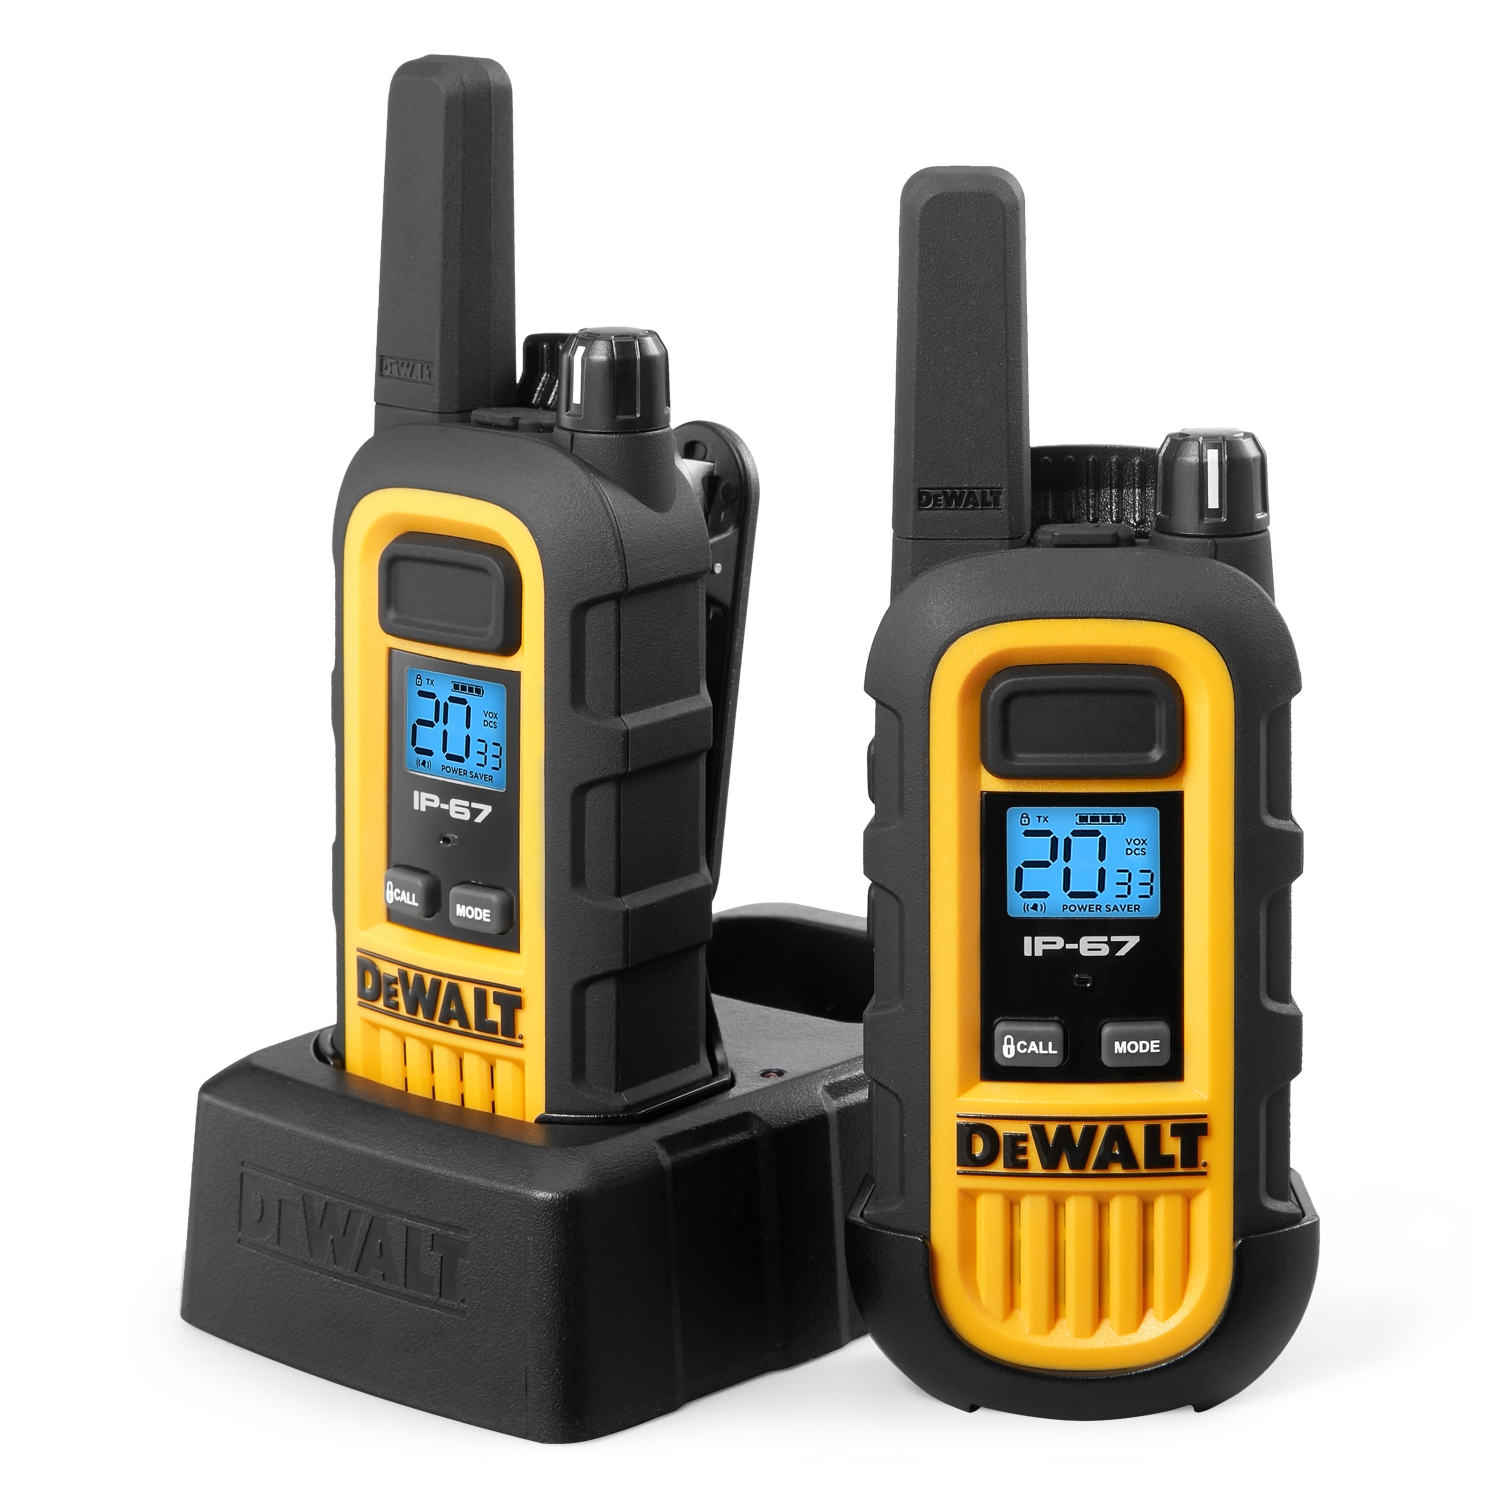 DEWALT DXFRS300 (7084944) 1 Watt Heavy Duty Walkie Talkies - Waterproof, Shock Resistant, Long Range & Rechargeable Two-Way Radio with VOX (2 Pack)